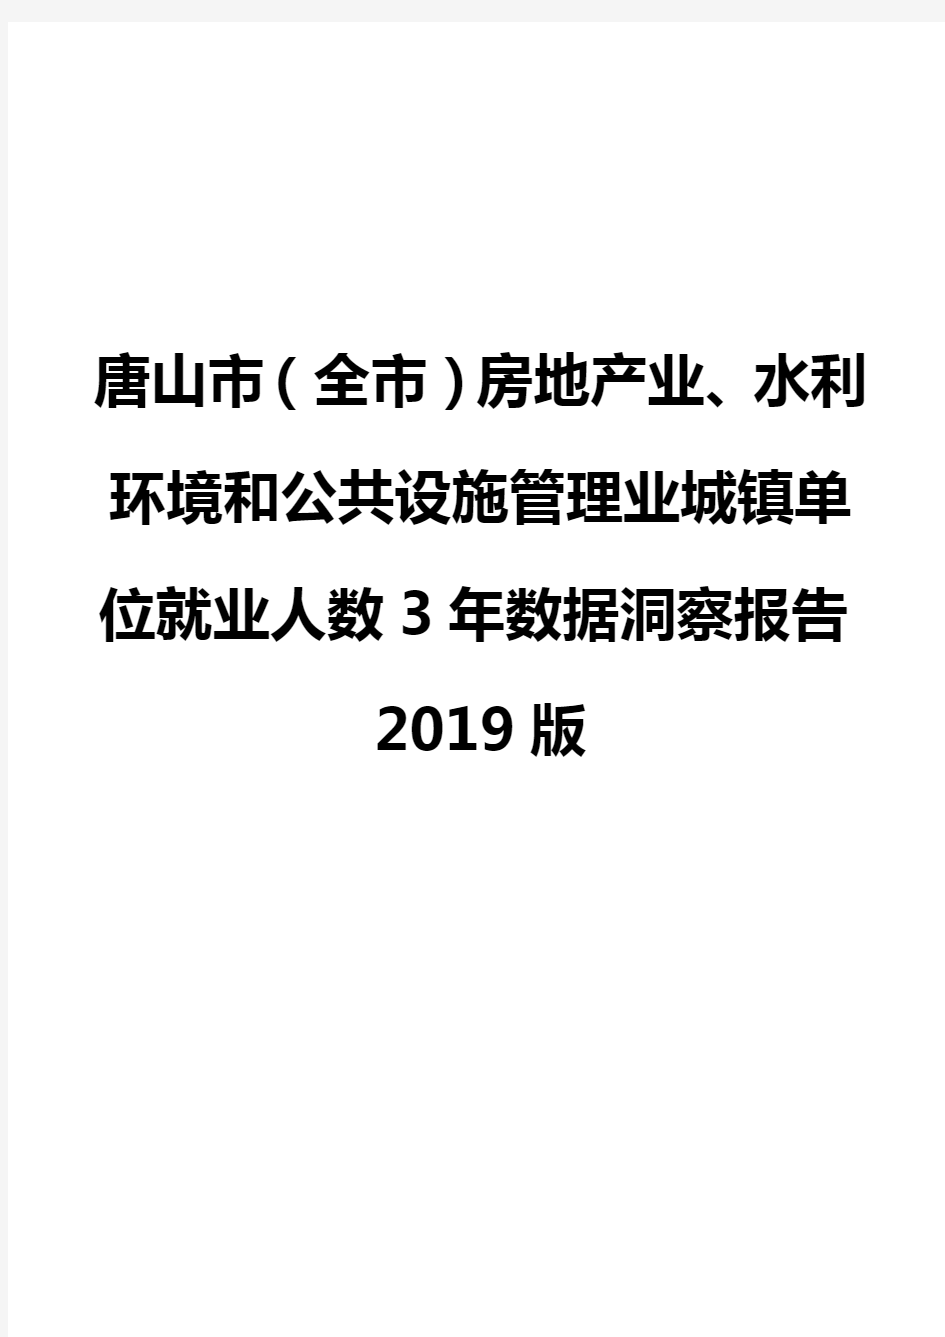 唐山市(全市)房地产业、水利环境和公共设施管理业城镇单位就业人数3年数据洞察报告2019版